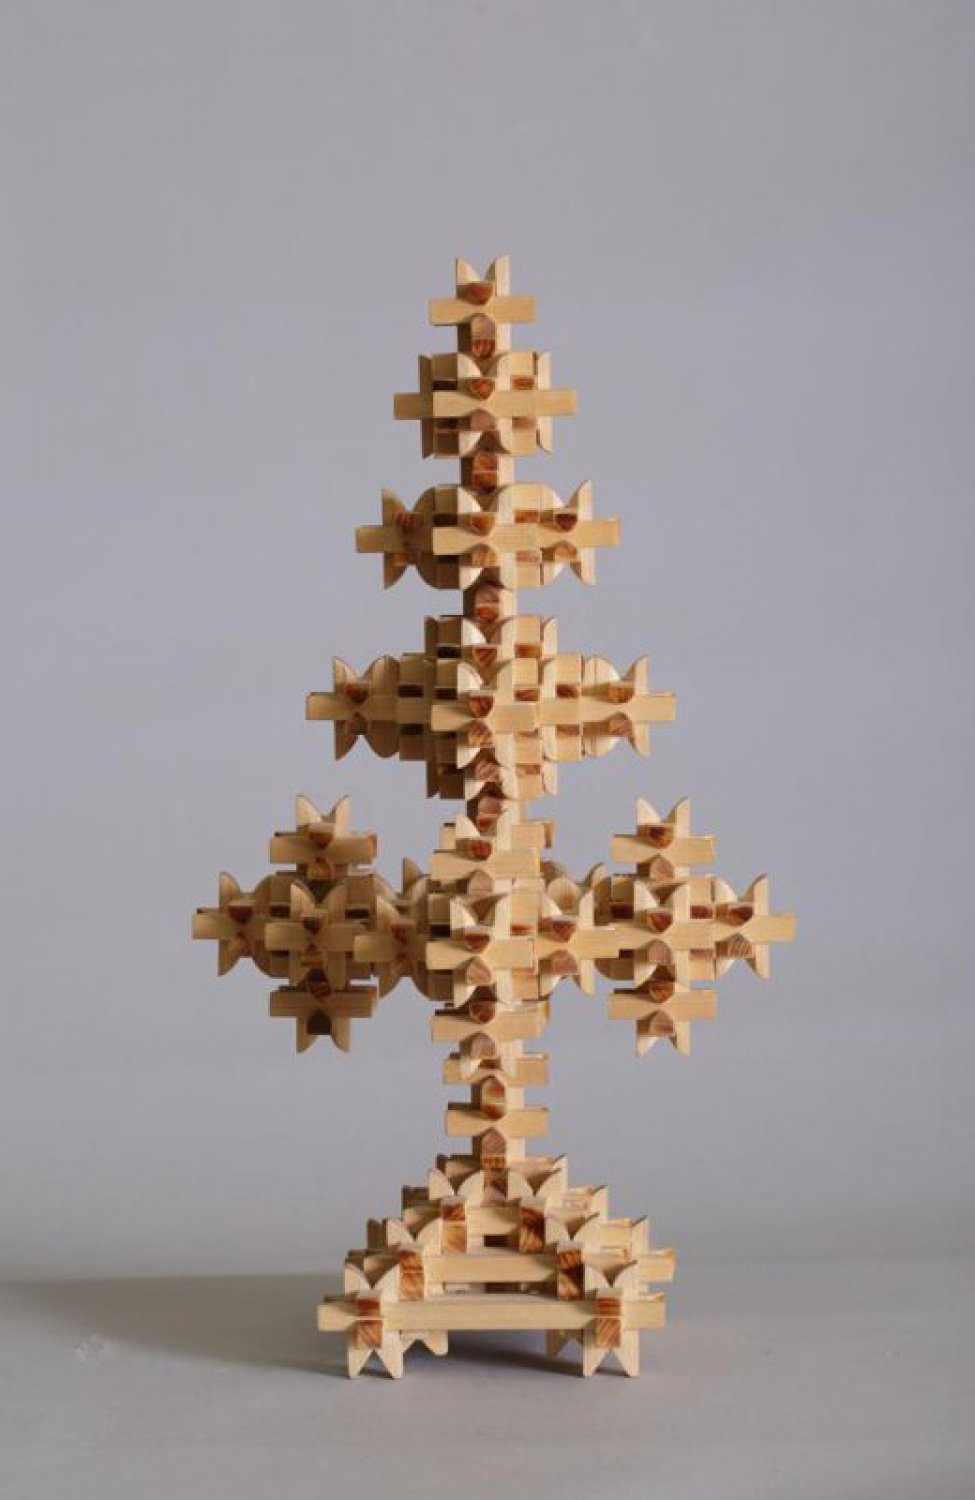 Пирамидальной формы, собрана из множества брусочков, соединенных между собой  с помощью пазов (260 деталей).